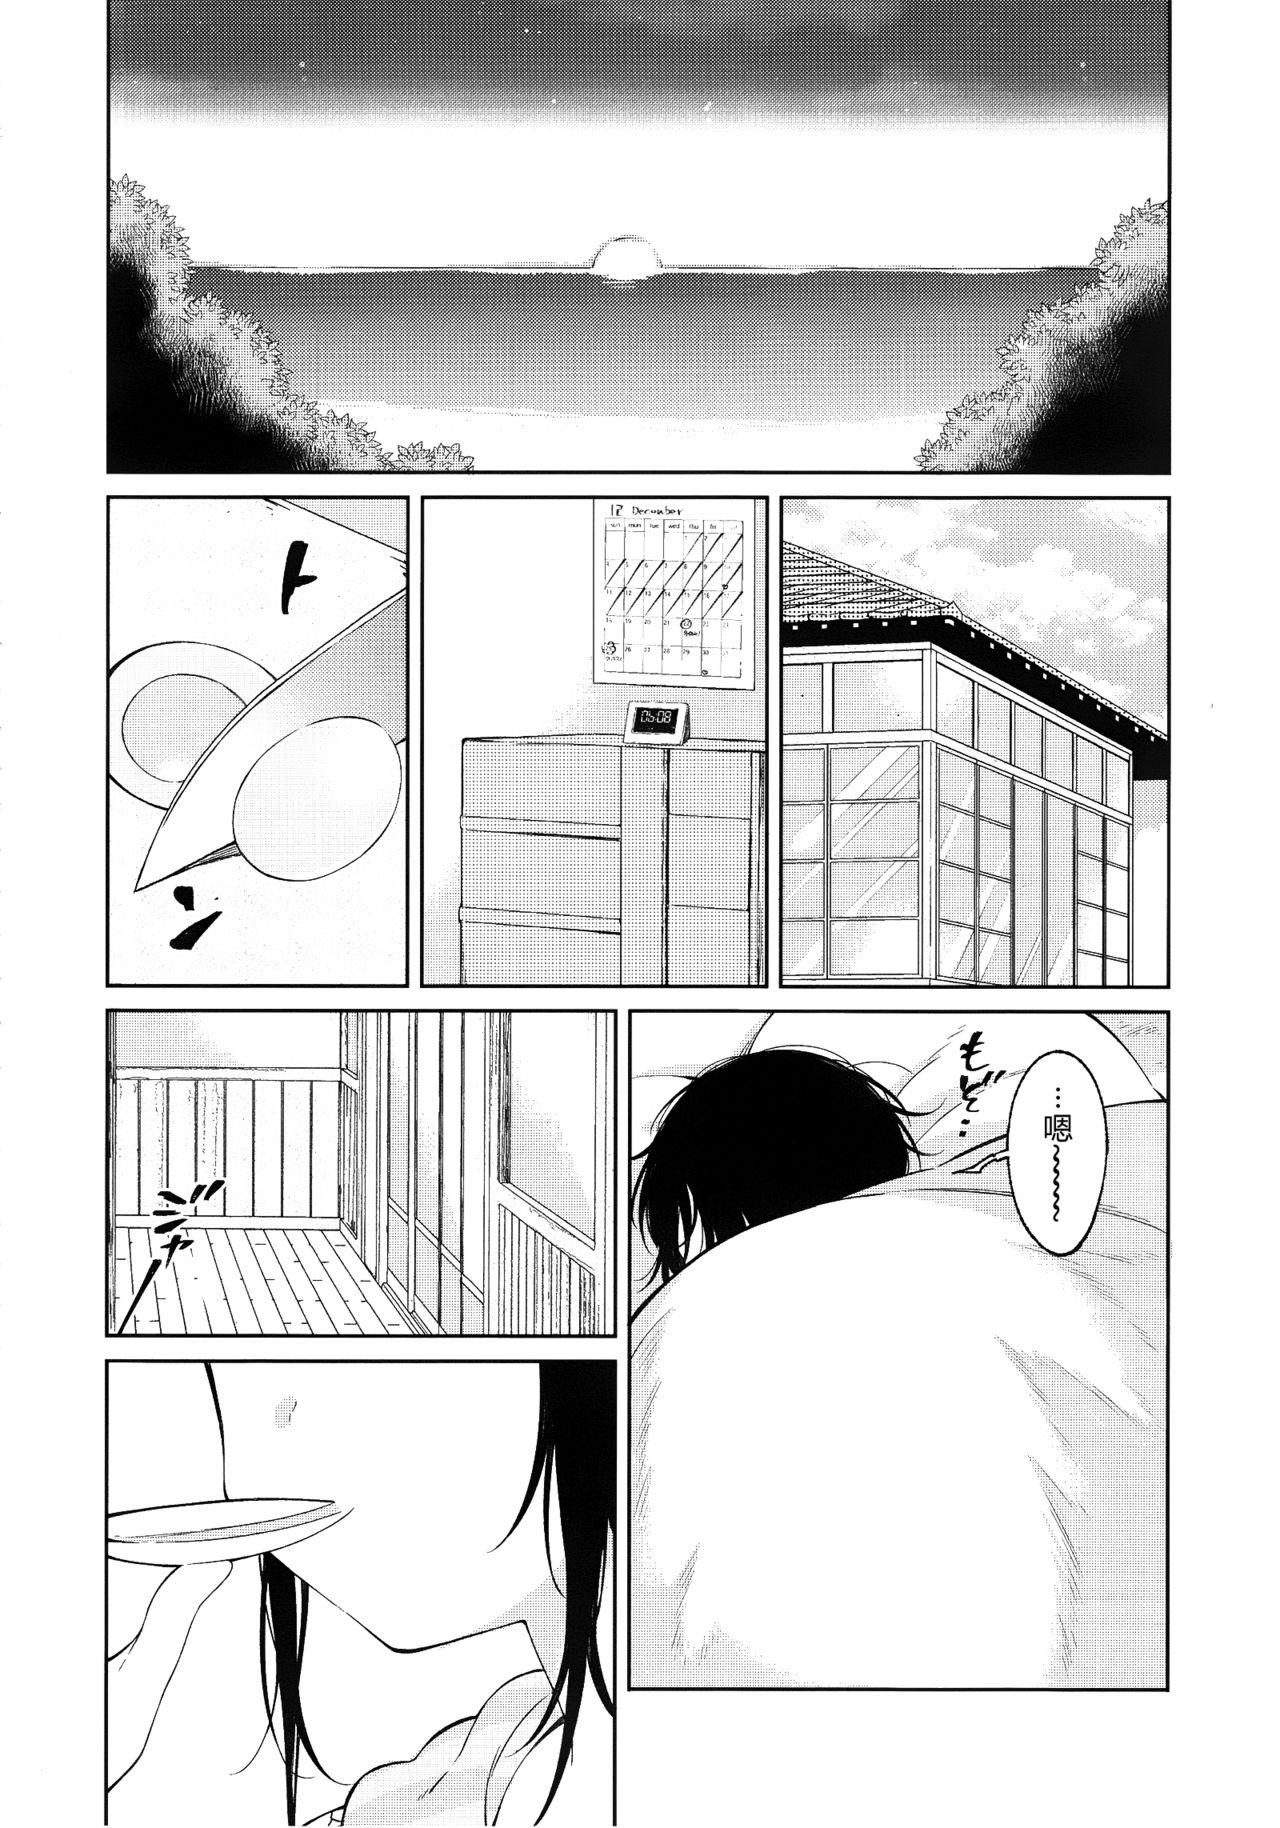 バキ特別編SAGA[板垣恵介](グラップラー刃牙外伝)[中文版][Keisuke Itagaki]Grappler Baki SAGA(The Romantic Contact chapter) [CHINESE](84页)-第1章-图片7